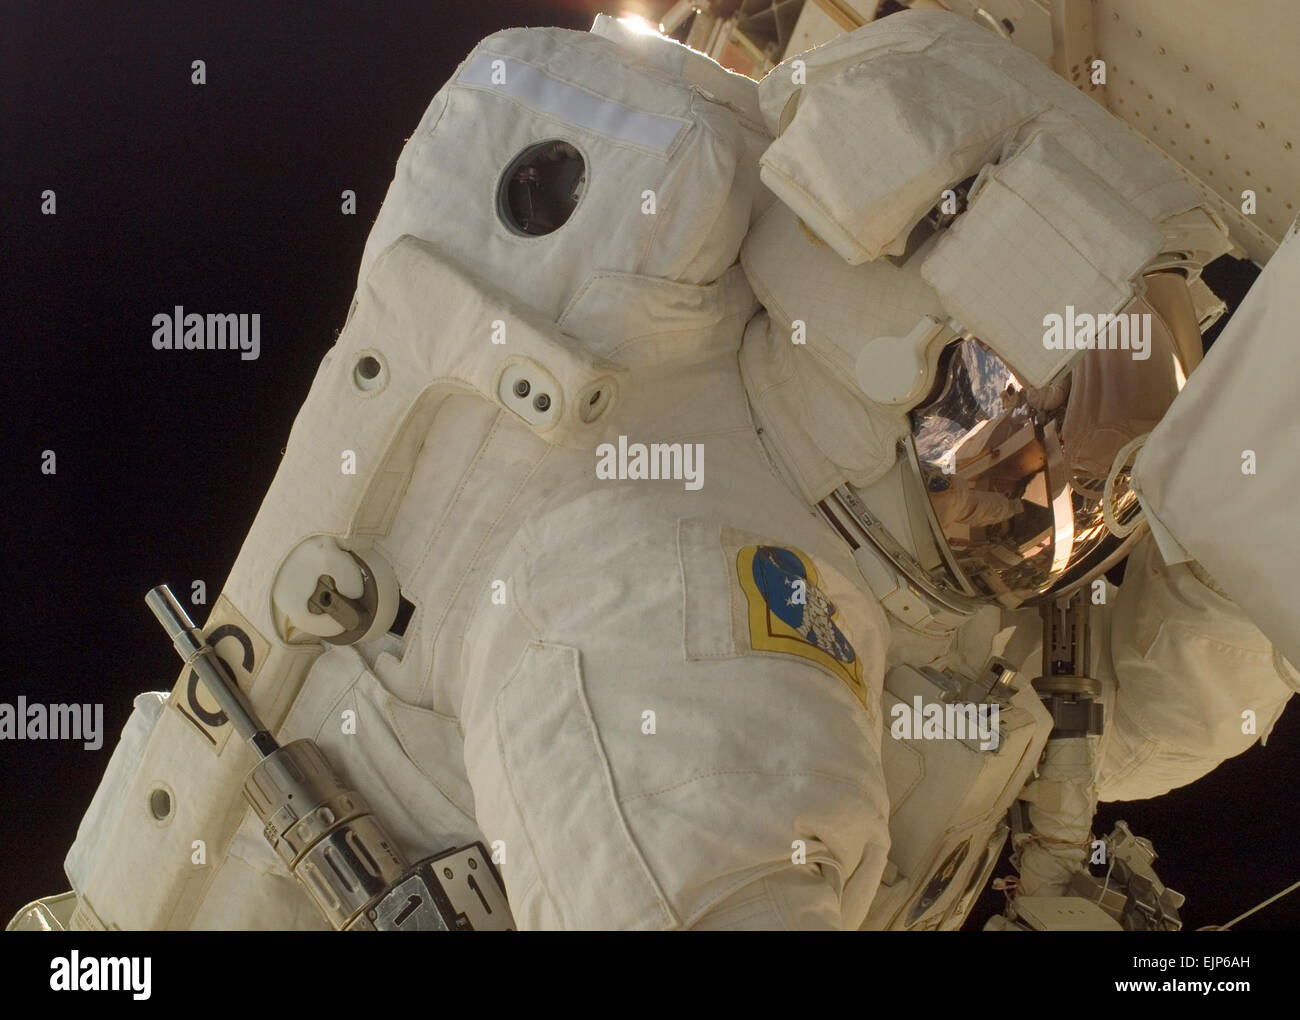 Astronauta dell'esercito Col. Doug Wheelock, STS-120 lo specialista di missione, sul suo primo spacewalk per eseguire il lavoro sulla stazione spaziale internazionale. Durante il suo terzo spacewalk sabato, lui e lo specialista di missione Scott Parazynski tenterà di riparare una strappata solar array nella porta 6 architrave. La NASA Foto Stock